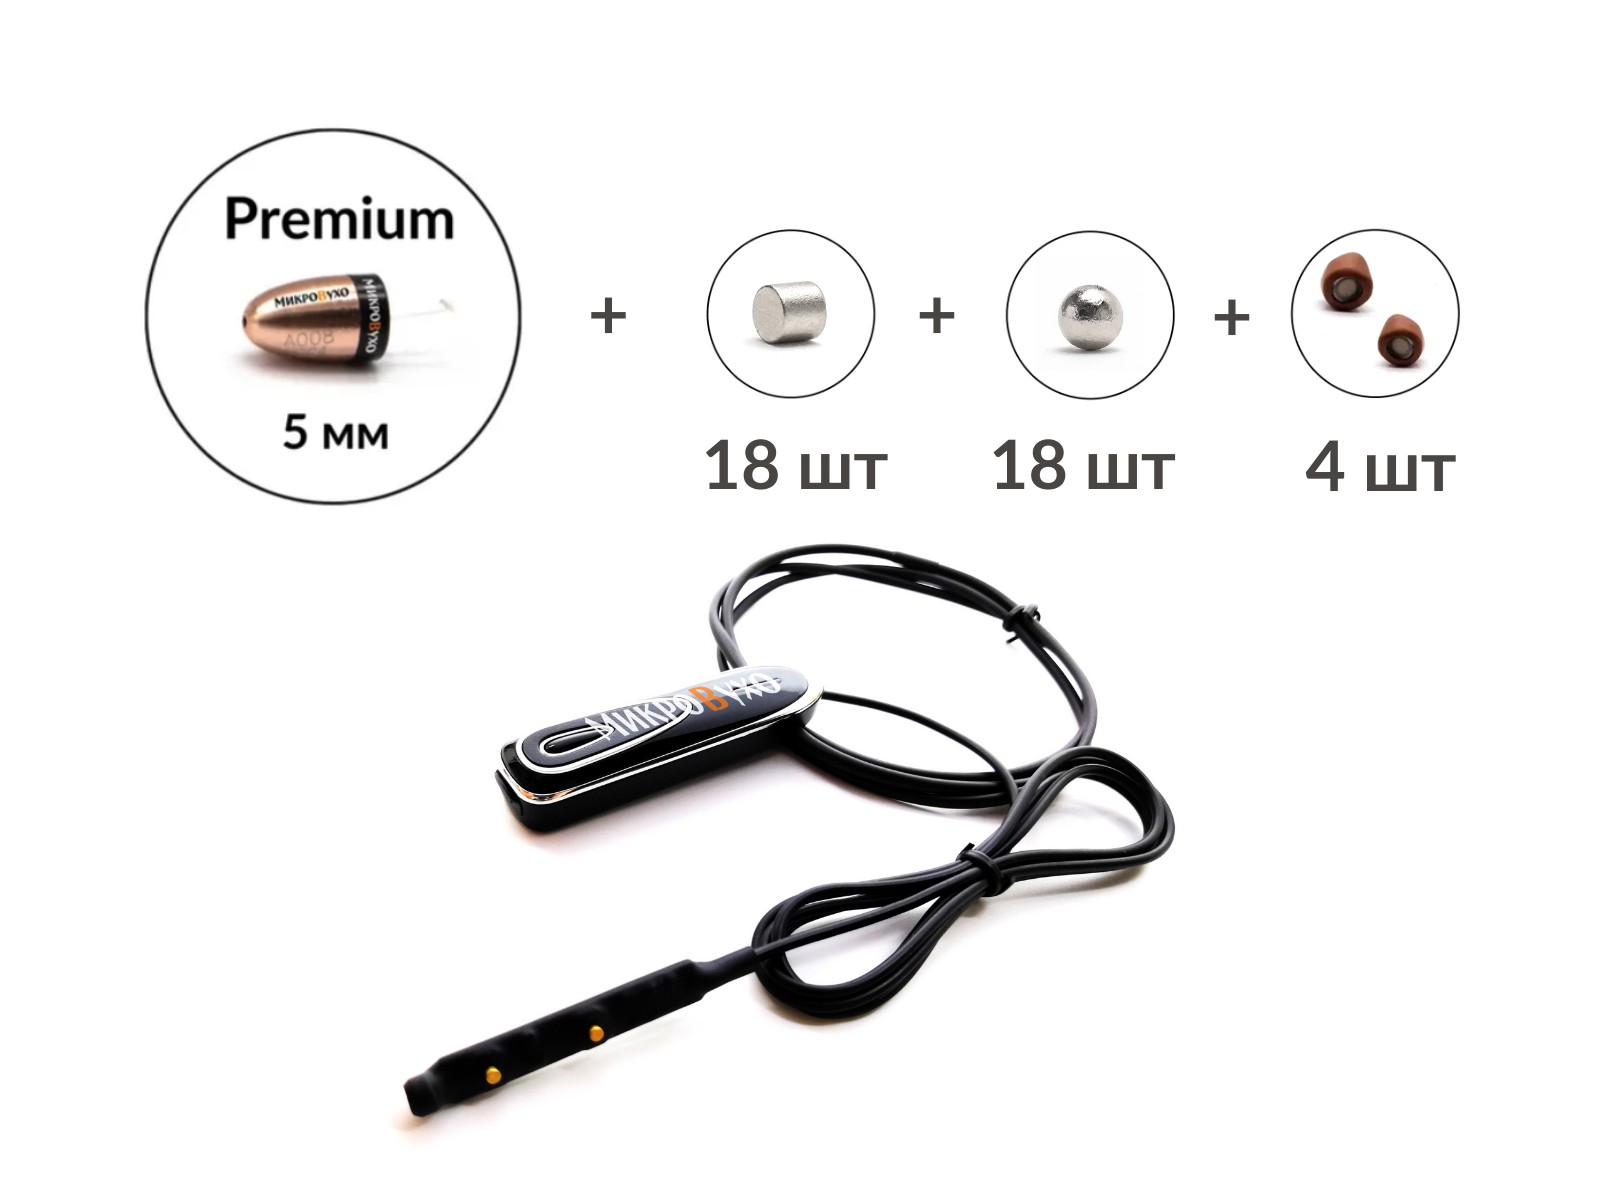 Универсальная гарнитура Bluetooth Premier с капсулой Premium и магнитами 2 мм - изображение 2